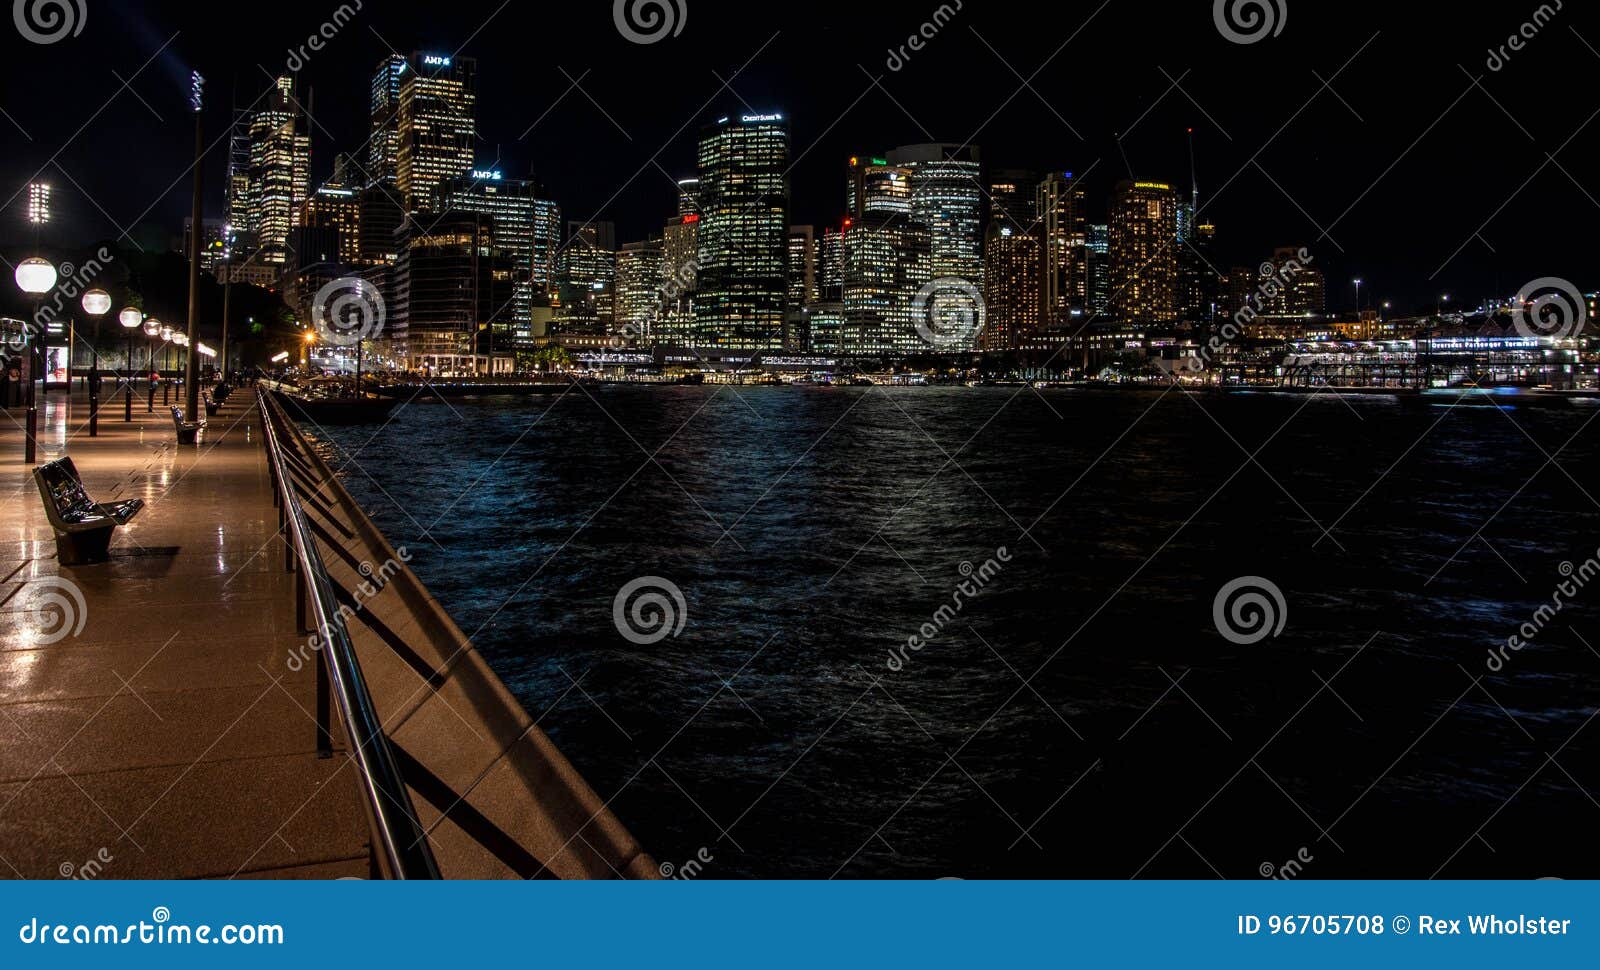 Sydney-Skyline und -nacht. Kreis-Quay und die Sydney-Skyline belichtet nachts